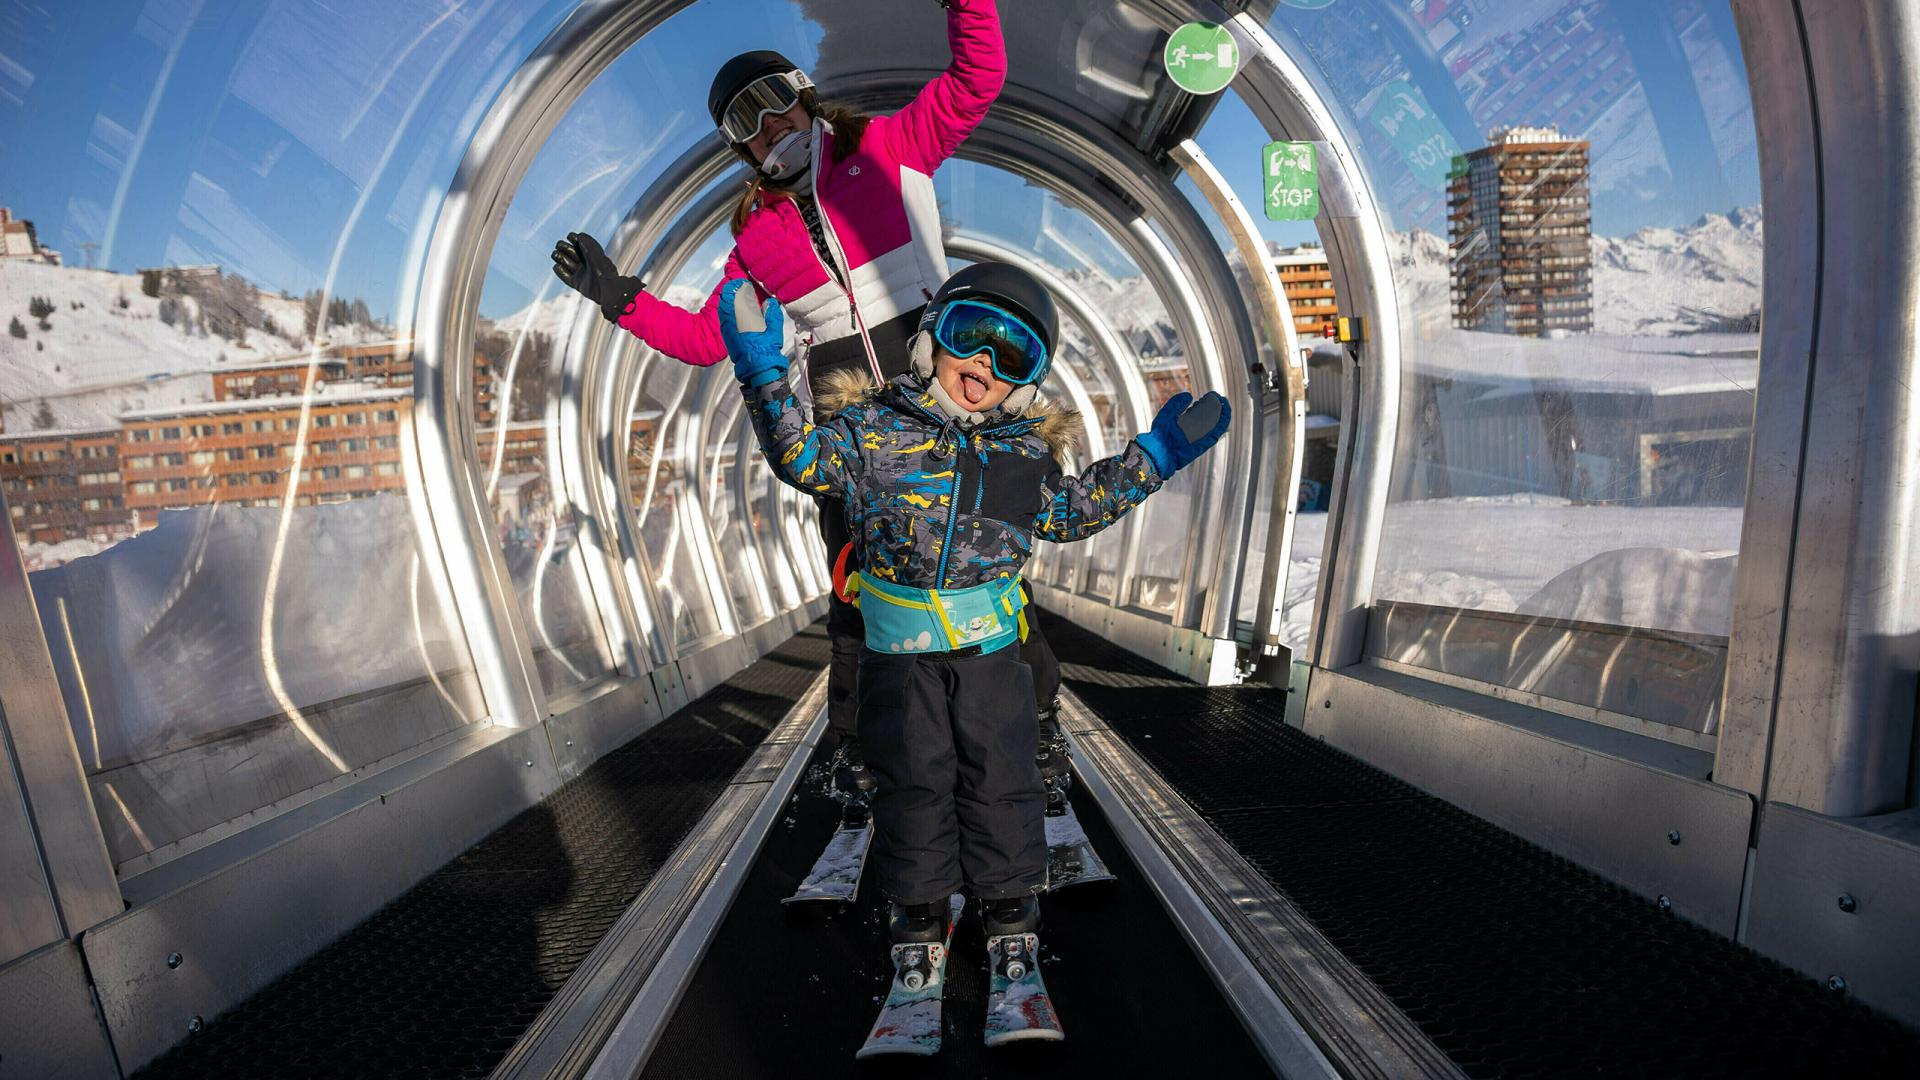 Tunnel des enfants ski